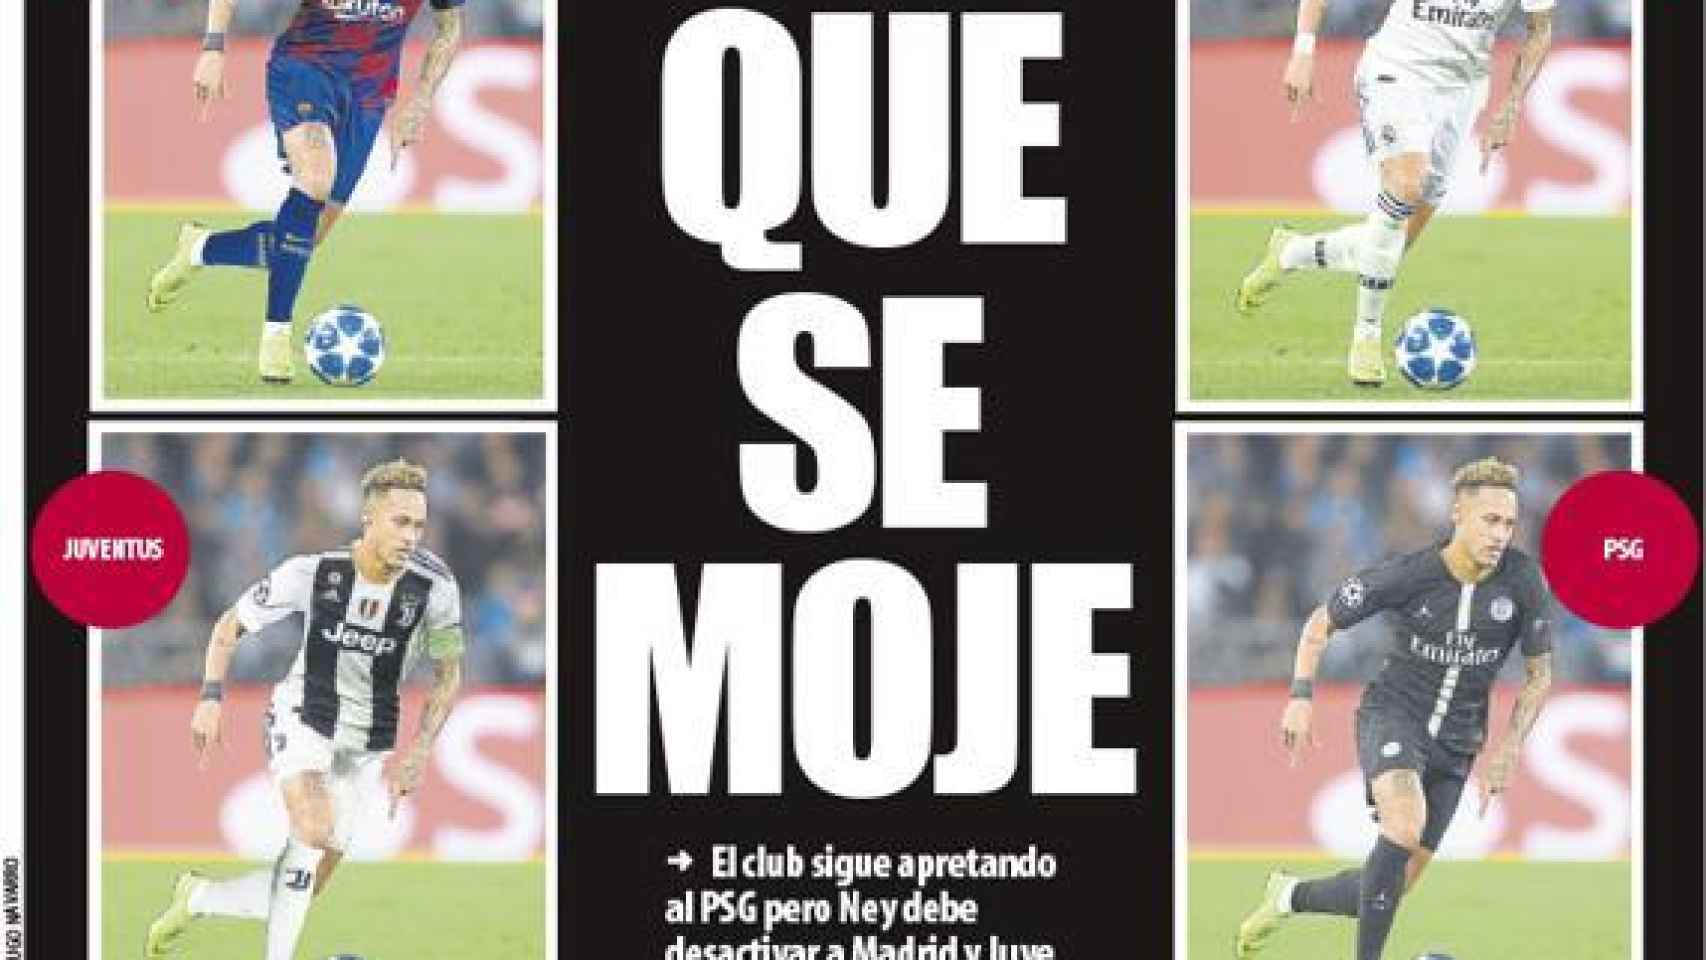 La portada del diario Mundo Deportivo (23/08/2019)